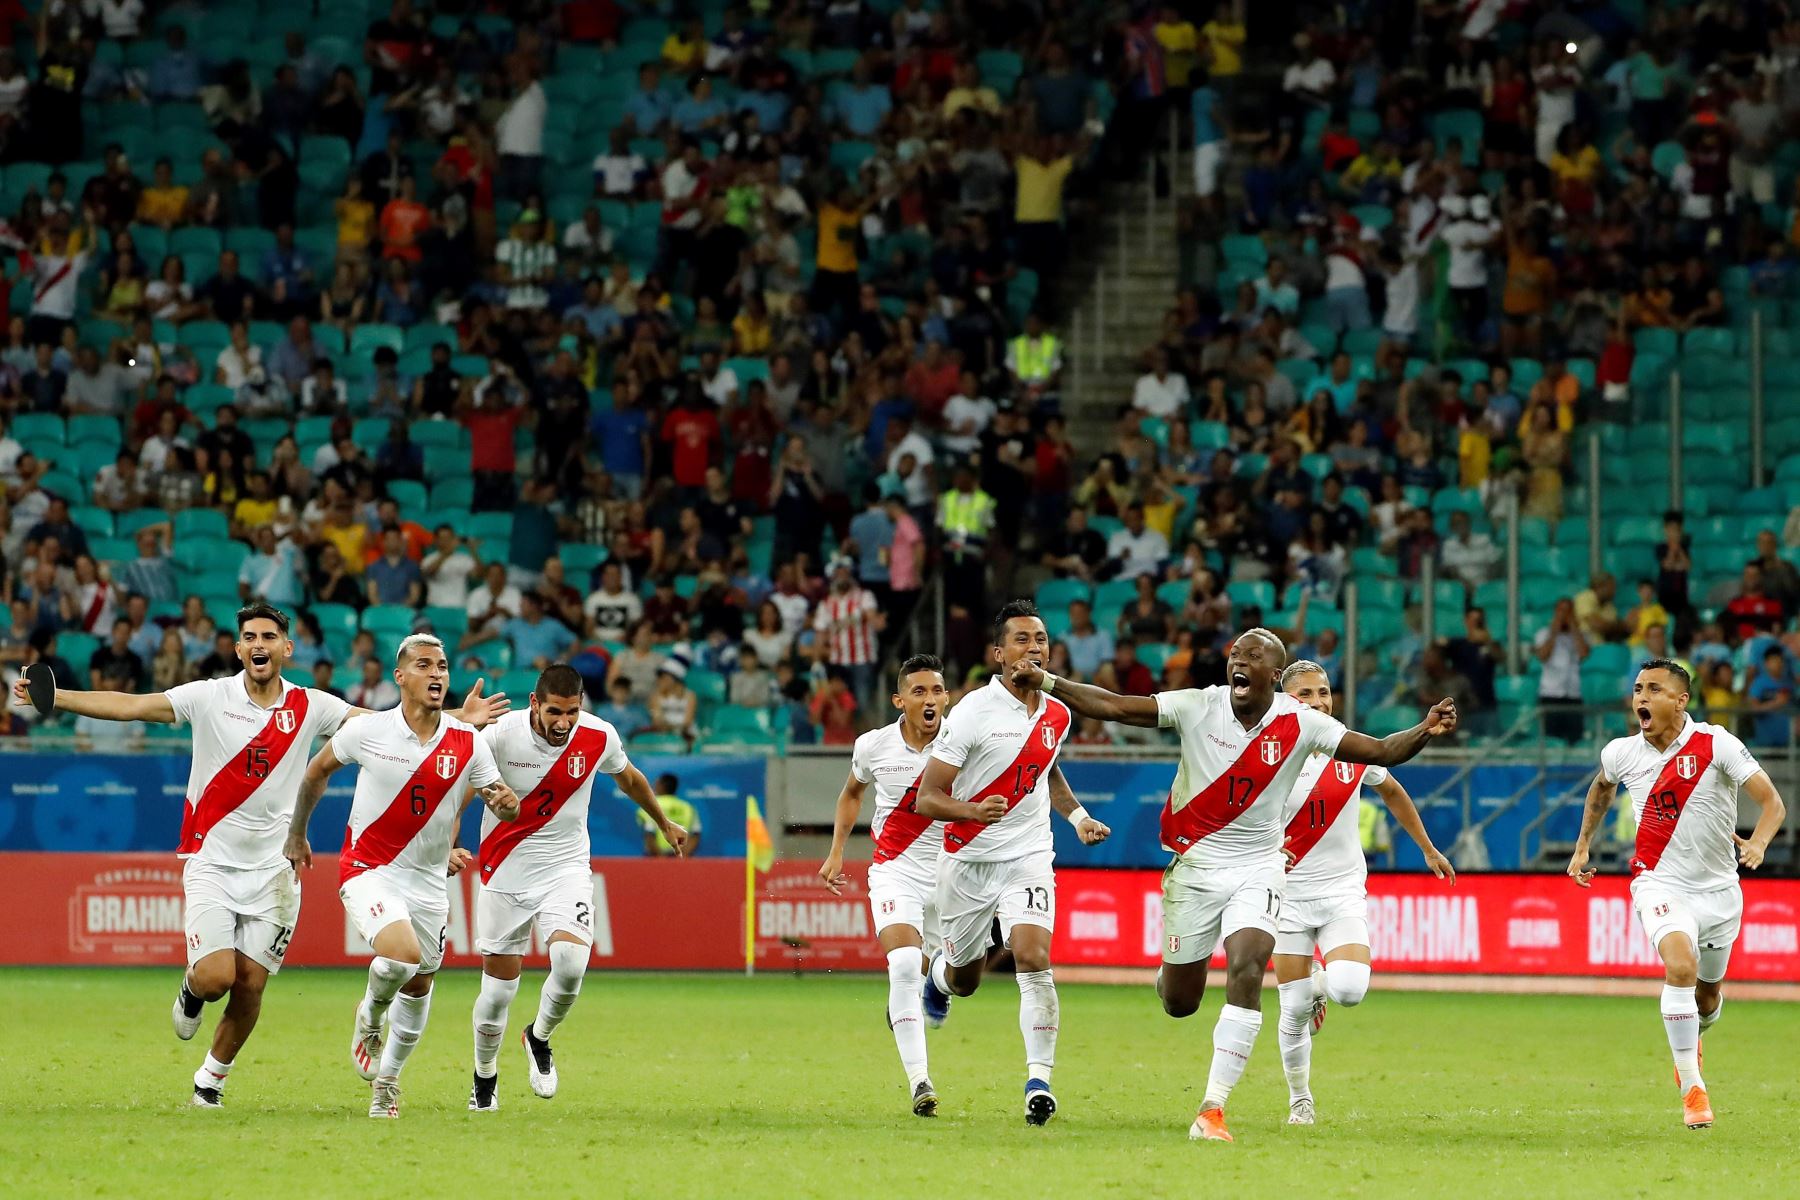 Jugadores de Perú celebran al ganar en la serie de penaltis, durante el partido Uruguay-Perú de cuartos de final de la Copa América de Fútbol 2019, en el Estadio Arena Fonte Nova de Salvador, Brasil.Foto.EFE